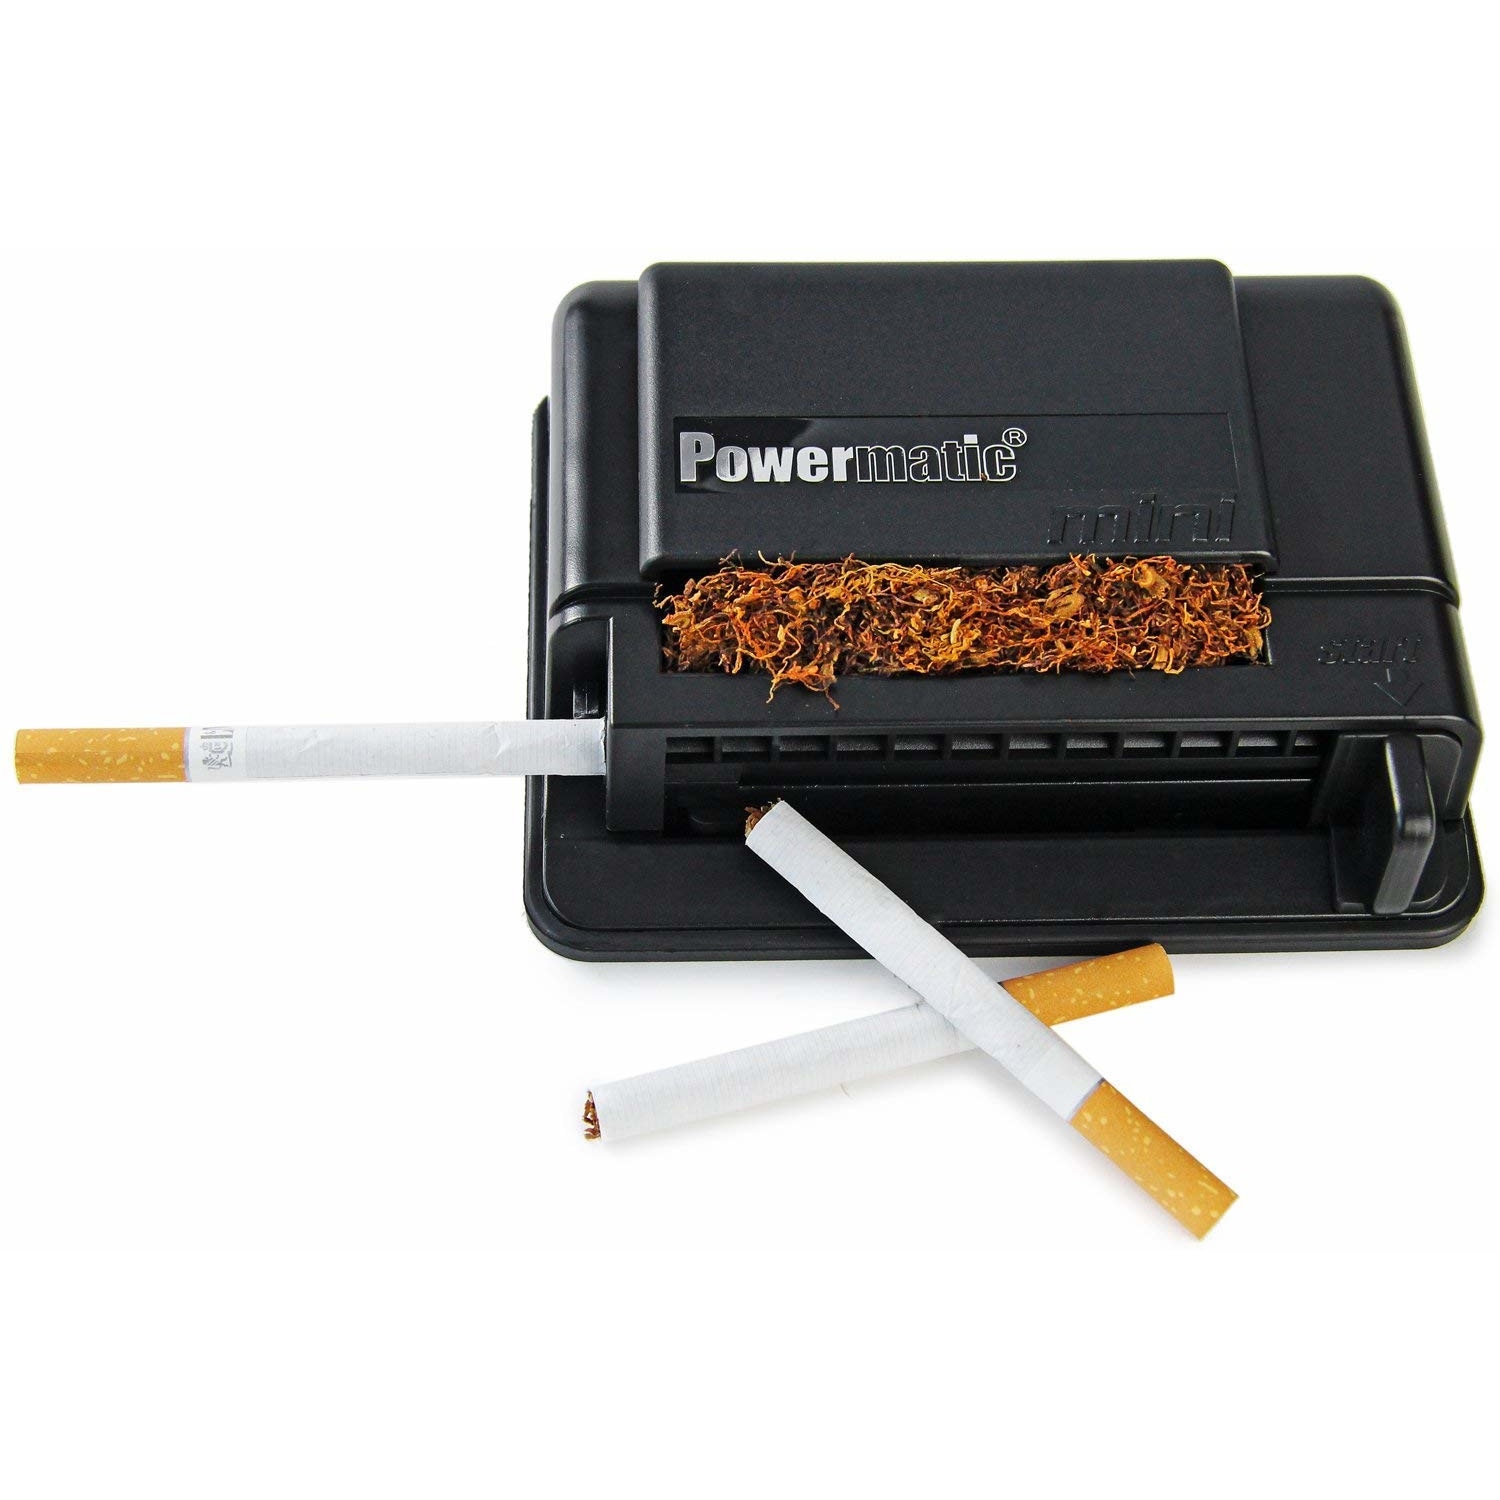 Машинка для гильз сигарет. Powermatic Mini машинка для сигарет. Машинка для набивки сигарет Powermatic Mini. Машинки для набивки гильз Powermatic. Powermatic для набивки сигарет.